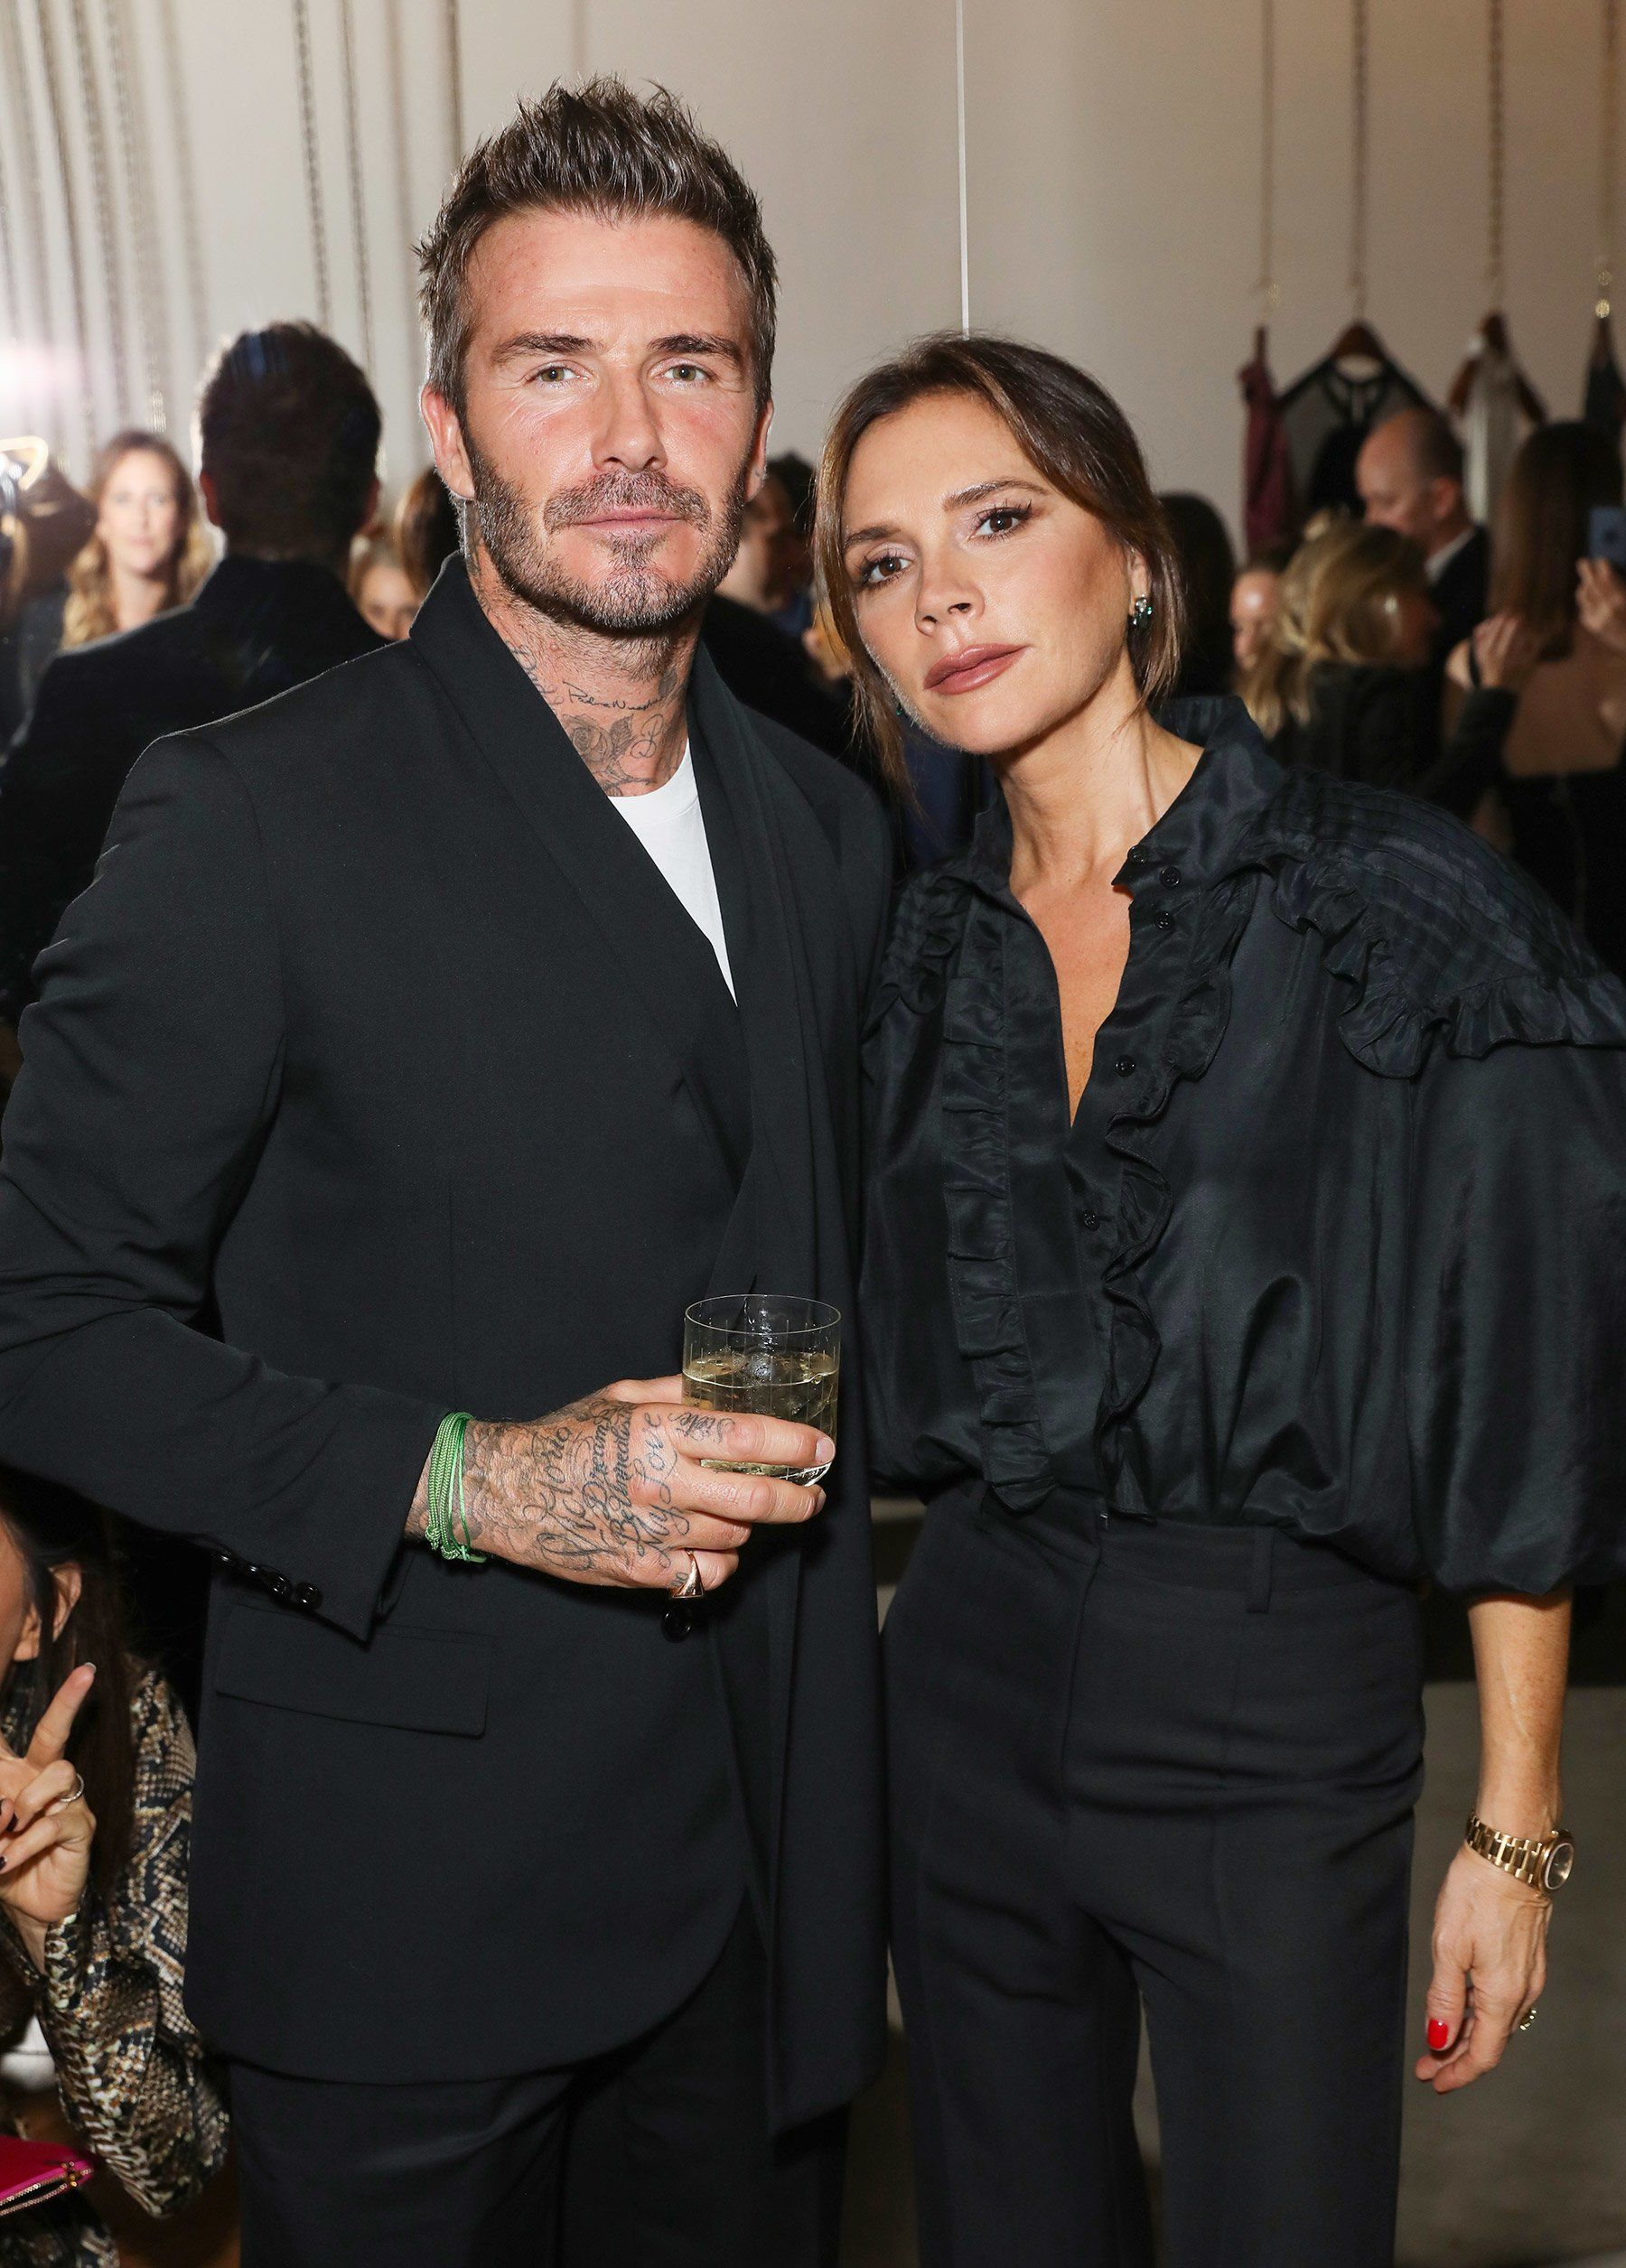 Vợ chồng Beckham chiếm trọn spotlight nhờ gu thời trang đồng điệu - 12